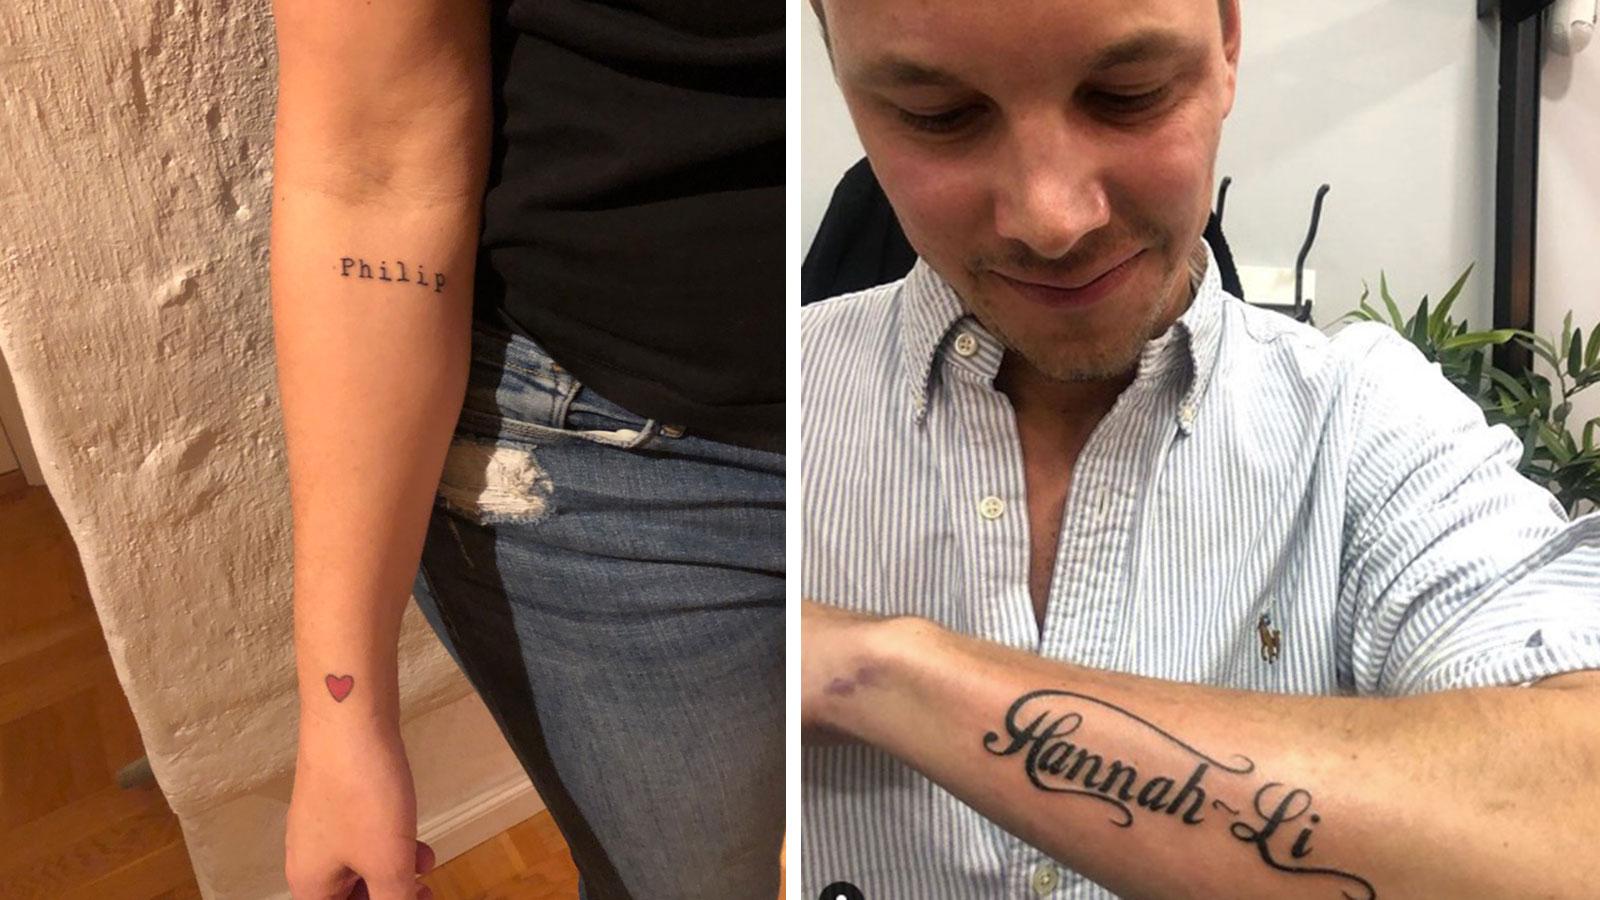 Hannahs tatuering (till vänster) och pojkvännen Philips dito.